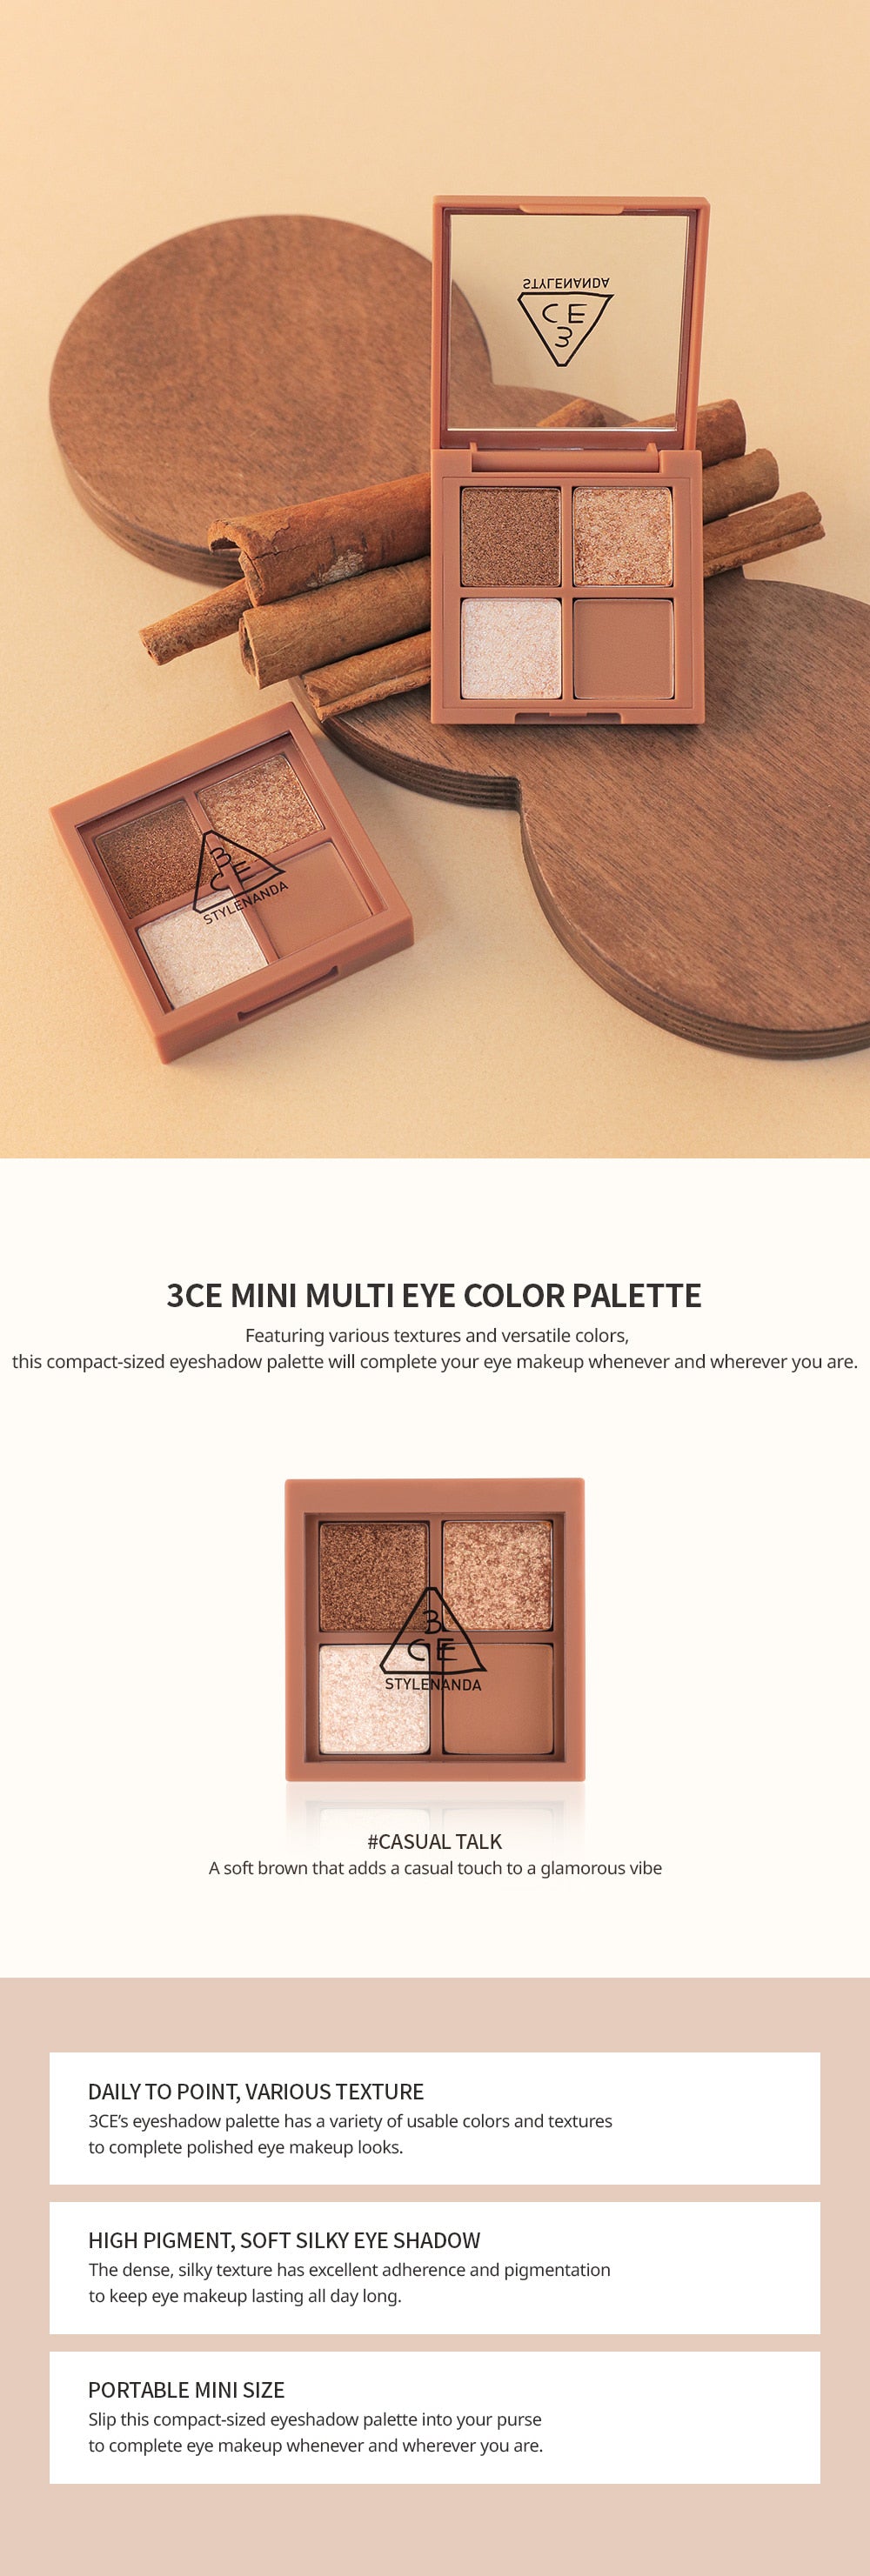 3CE Mini Multi Eye Color Palette #Casual Talk